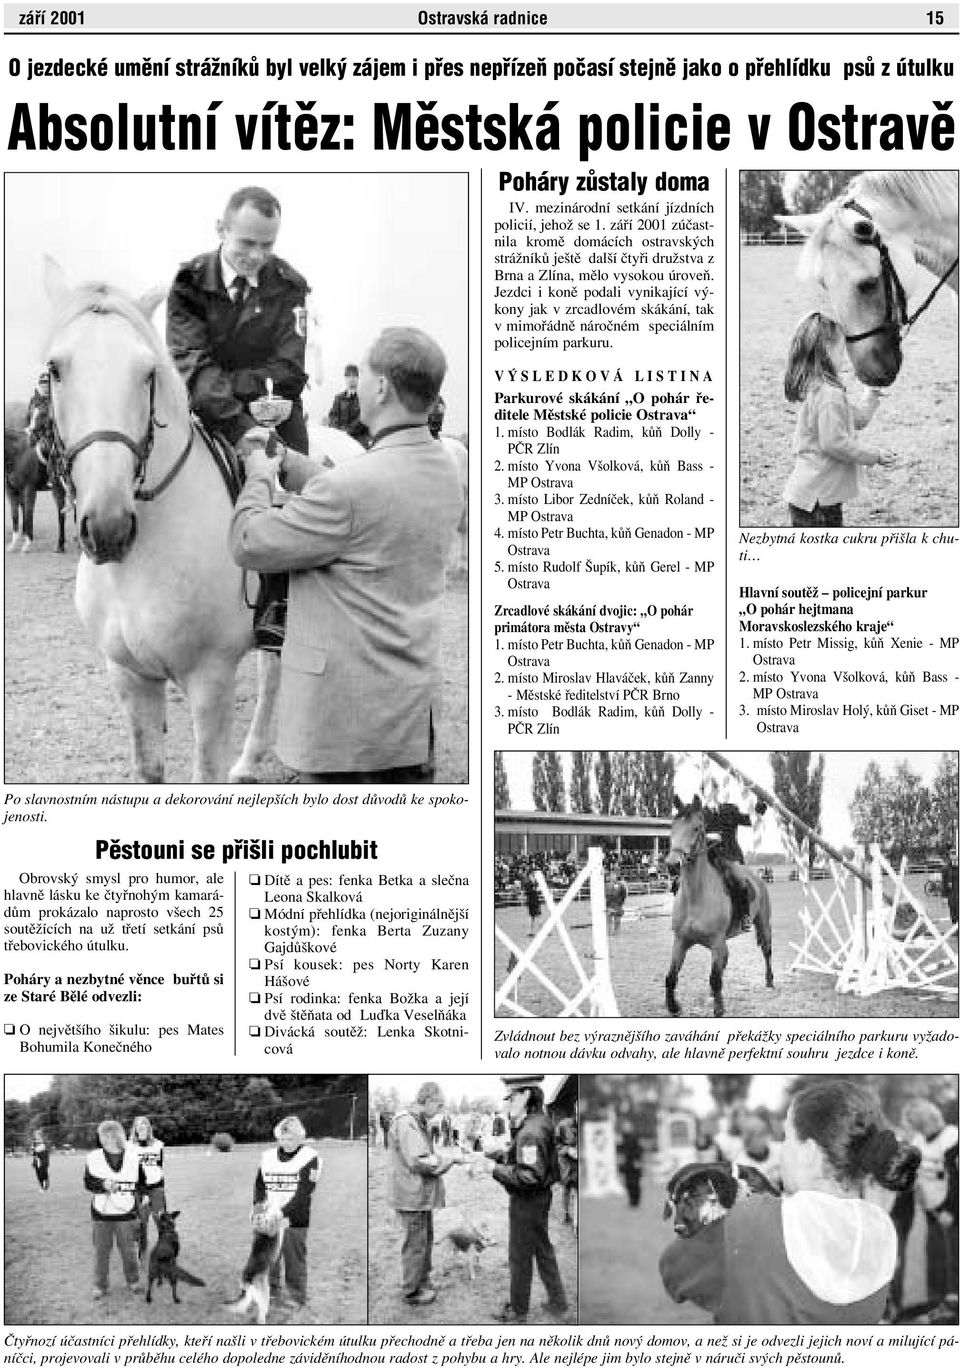 Jezdci i koně podali vynikající výkony jak v zrcadlovém skákání, tak v mimořádně náročném speciálním policejním parkuru.